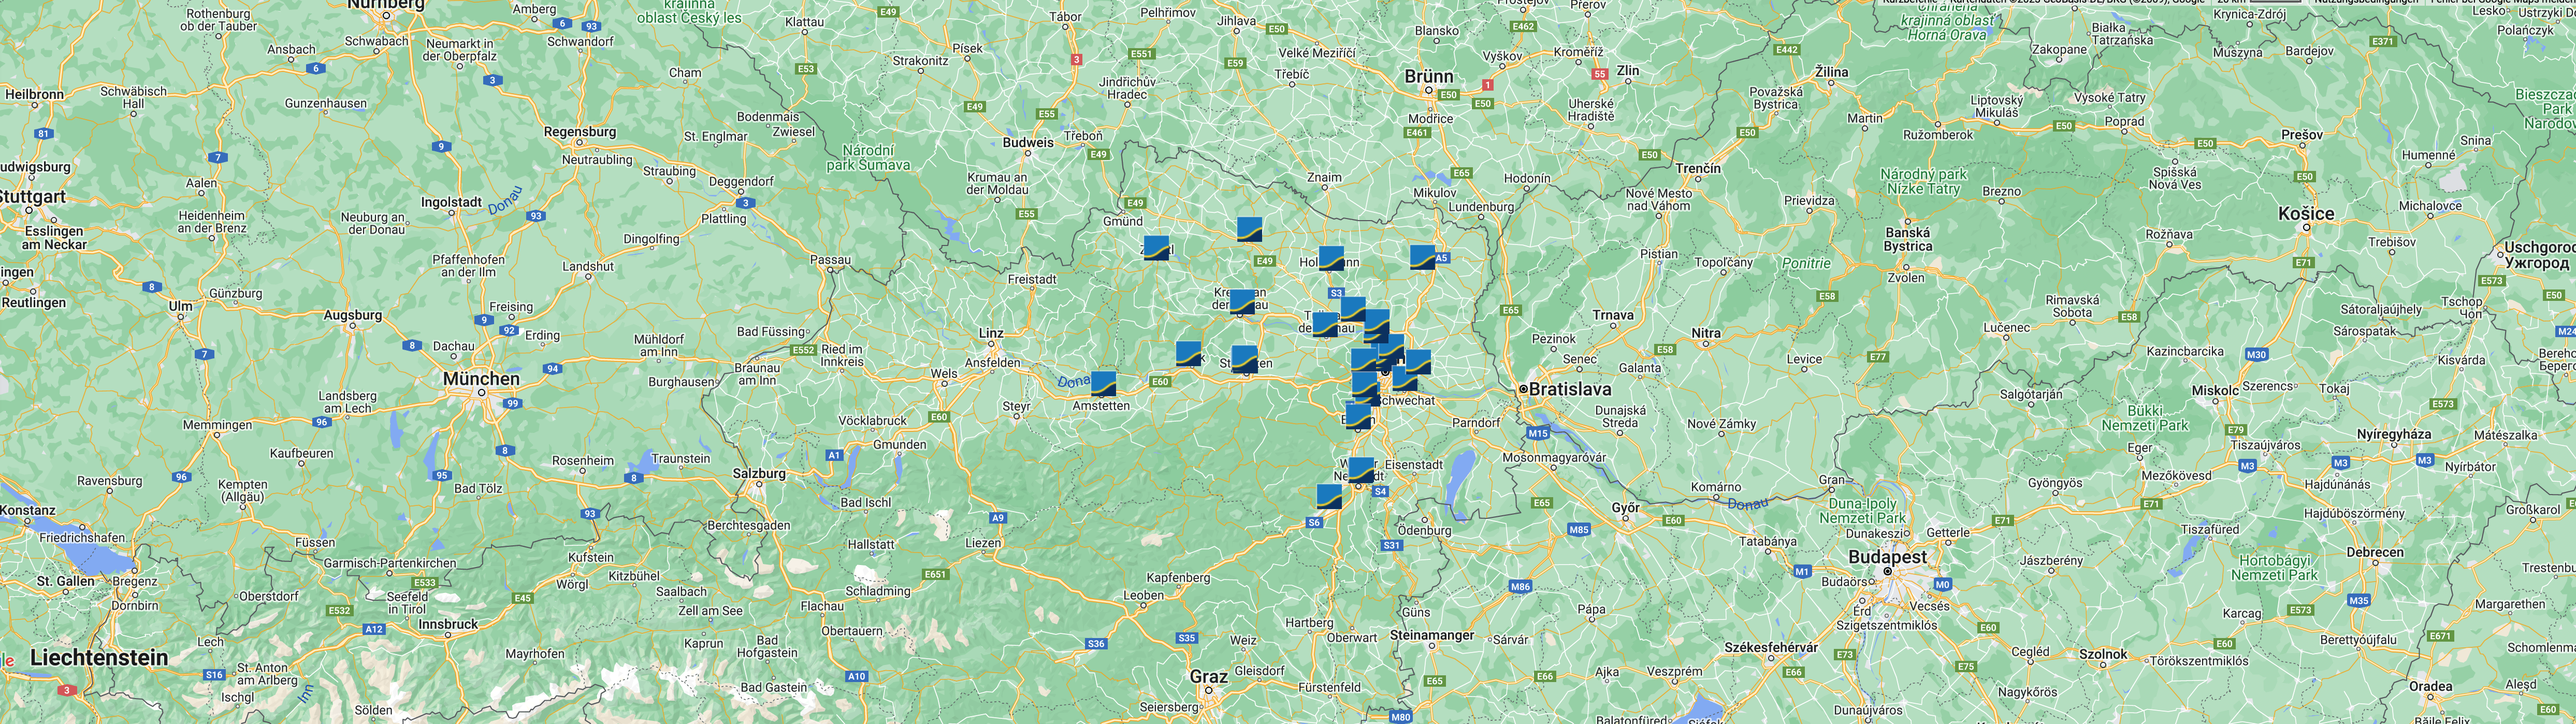 Google Maps Ansicht aller HYPO NOE Filialen in Niederösterreich und Wien.